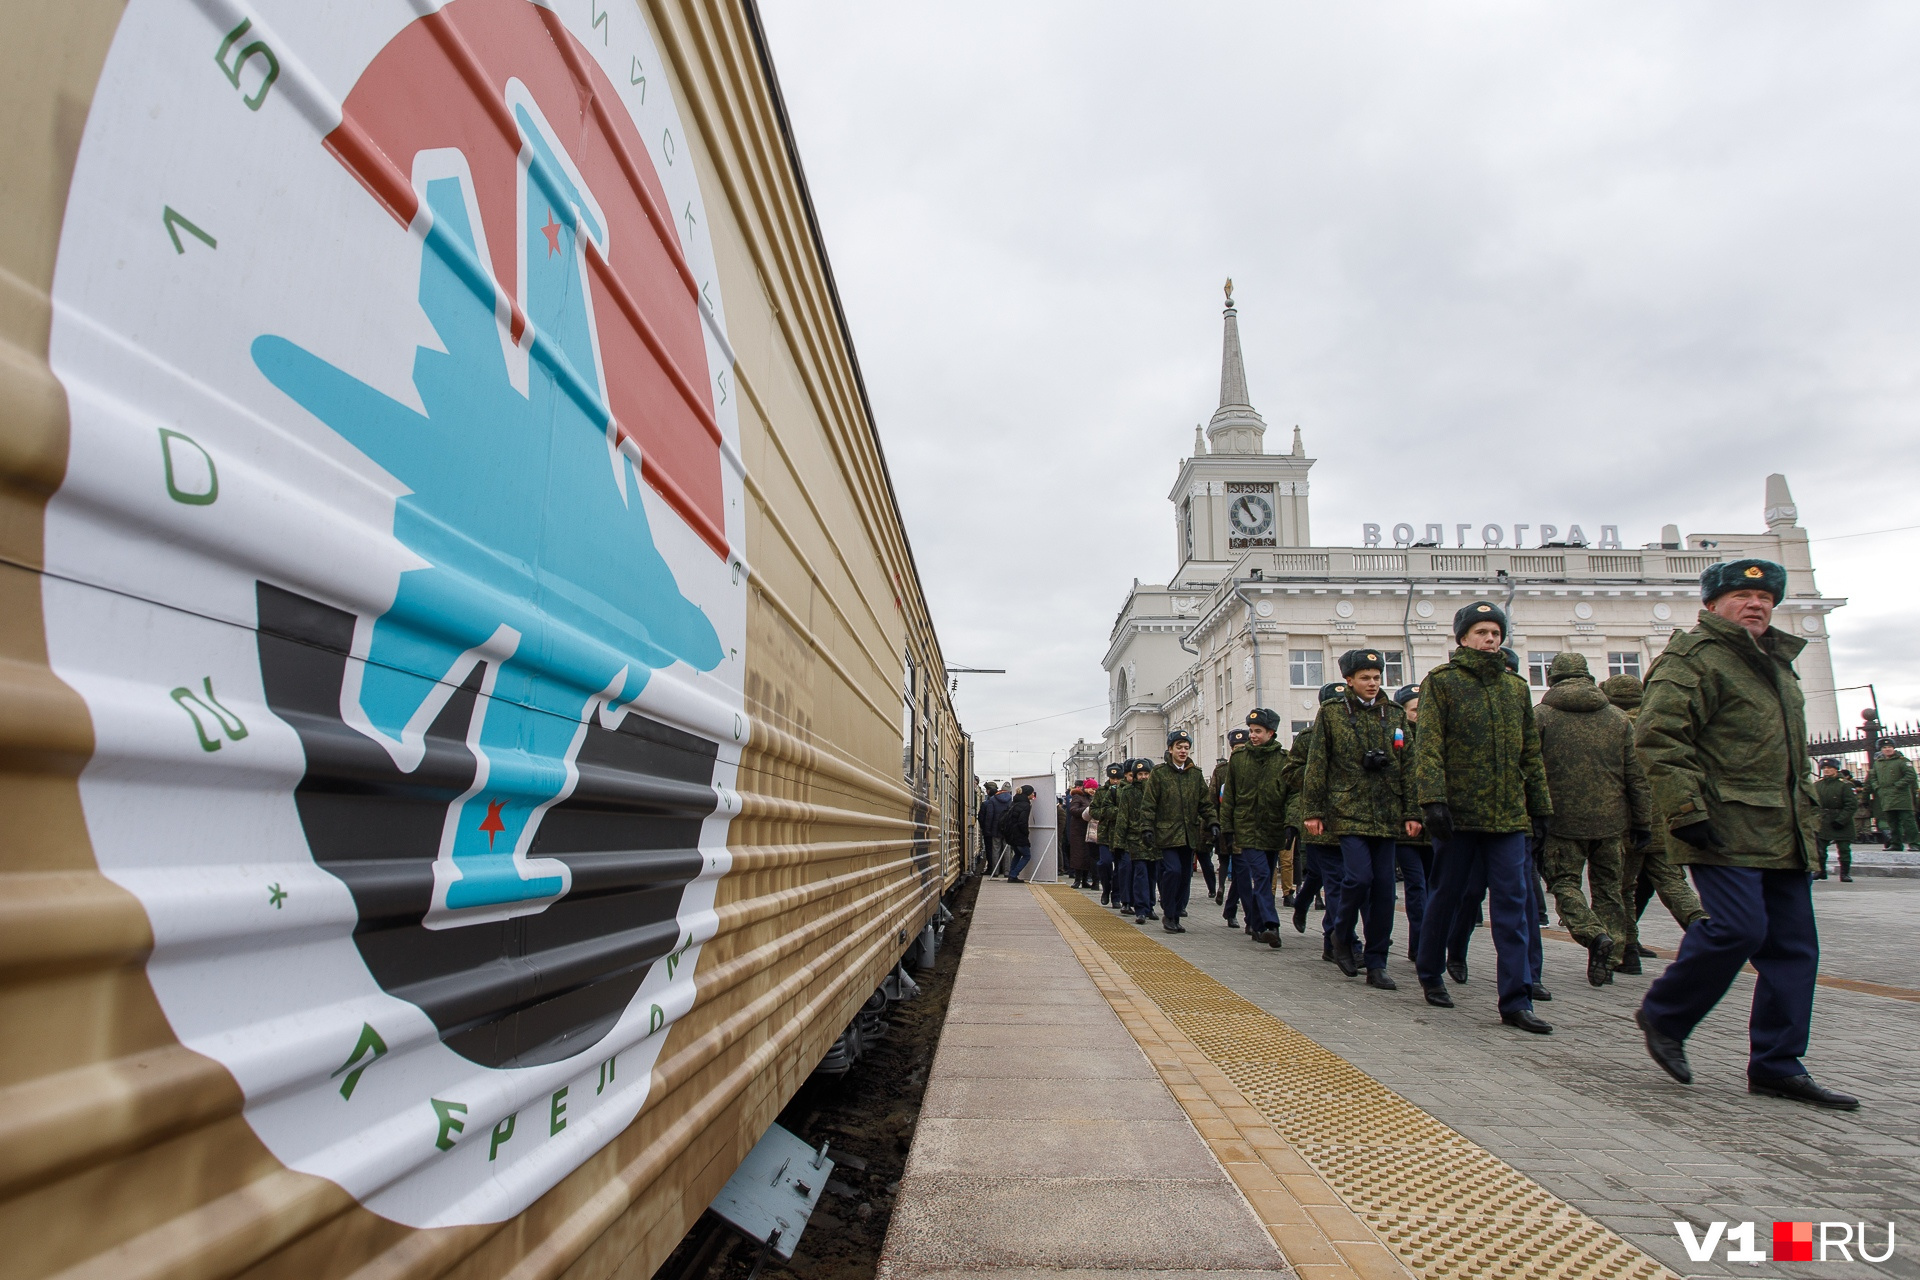 Поезд с отвоеванным оружием колесит по всей России с 23 февраля 